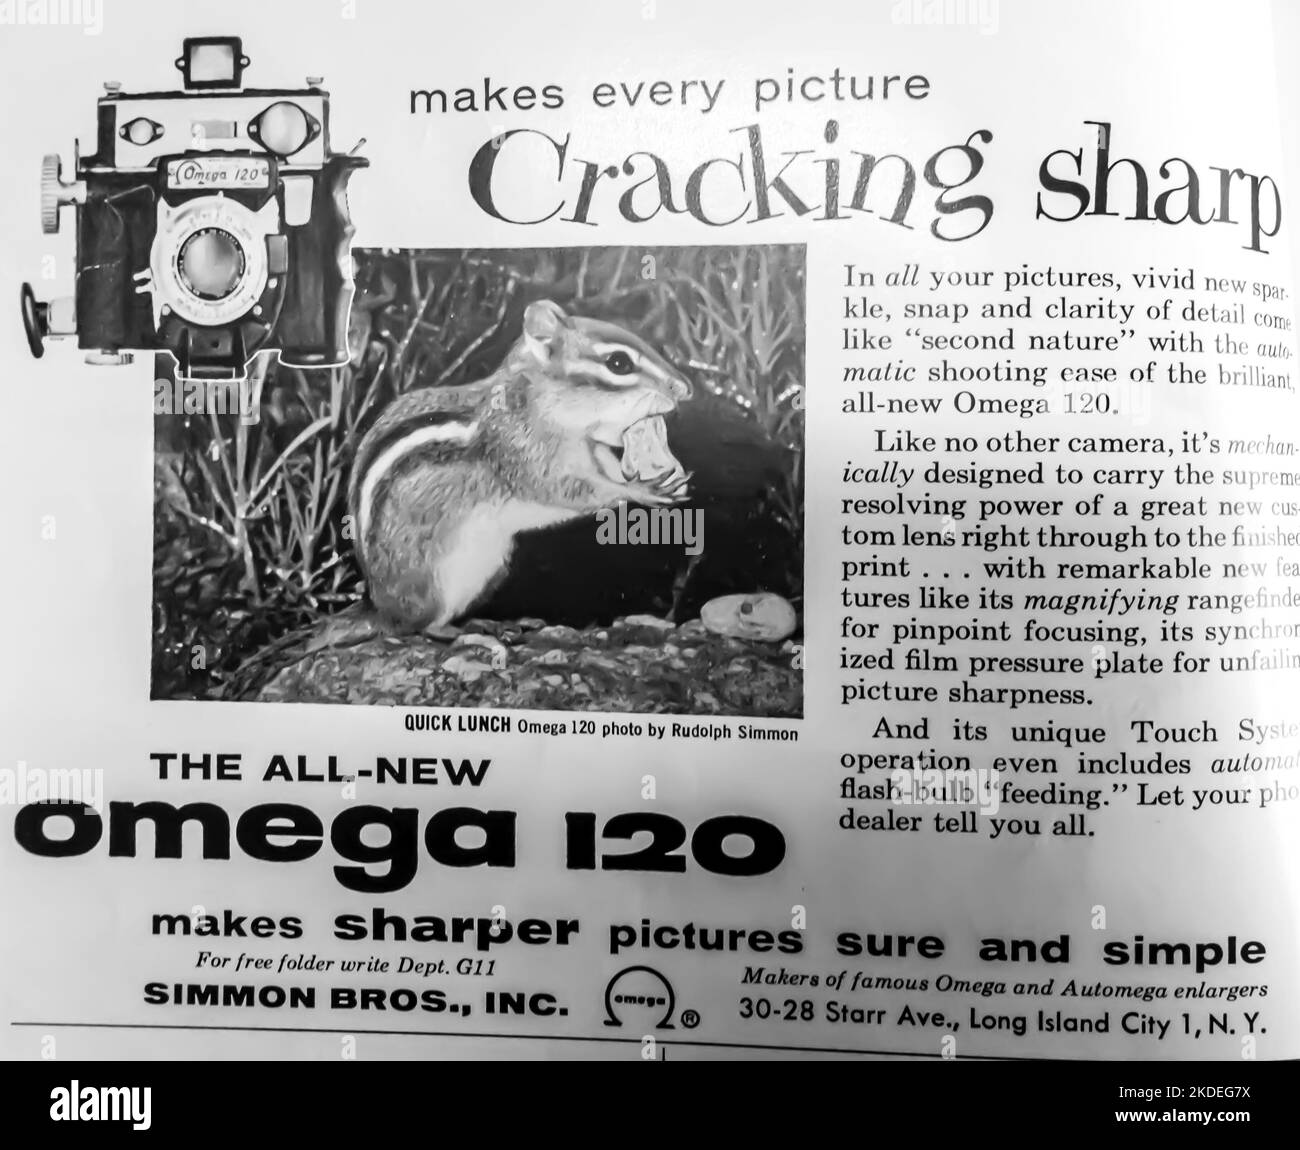 Camera Omega-120, Simon Bros Inc. advertisement placed inside NatGeo magazine< 1954 Stock Photo